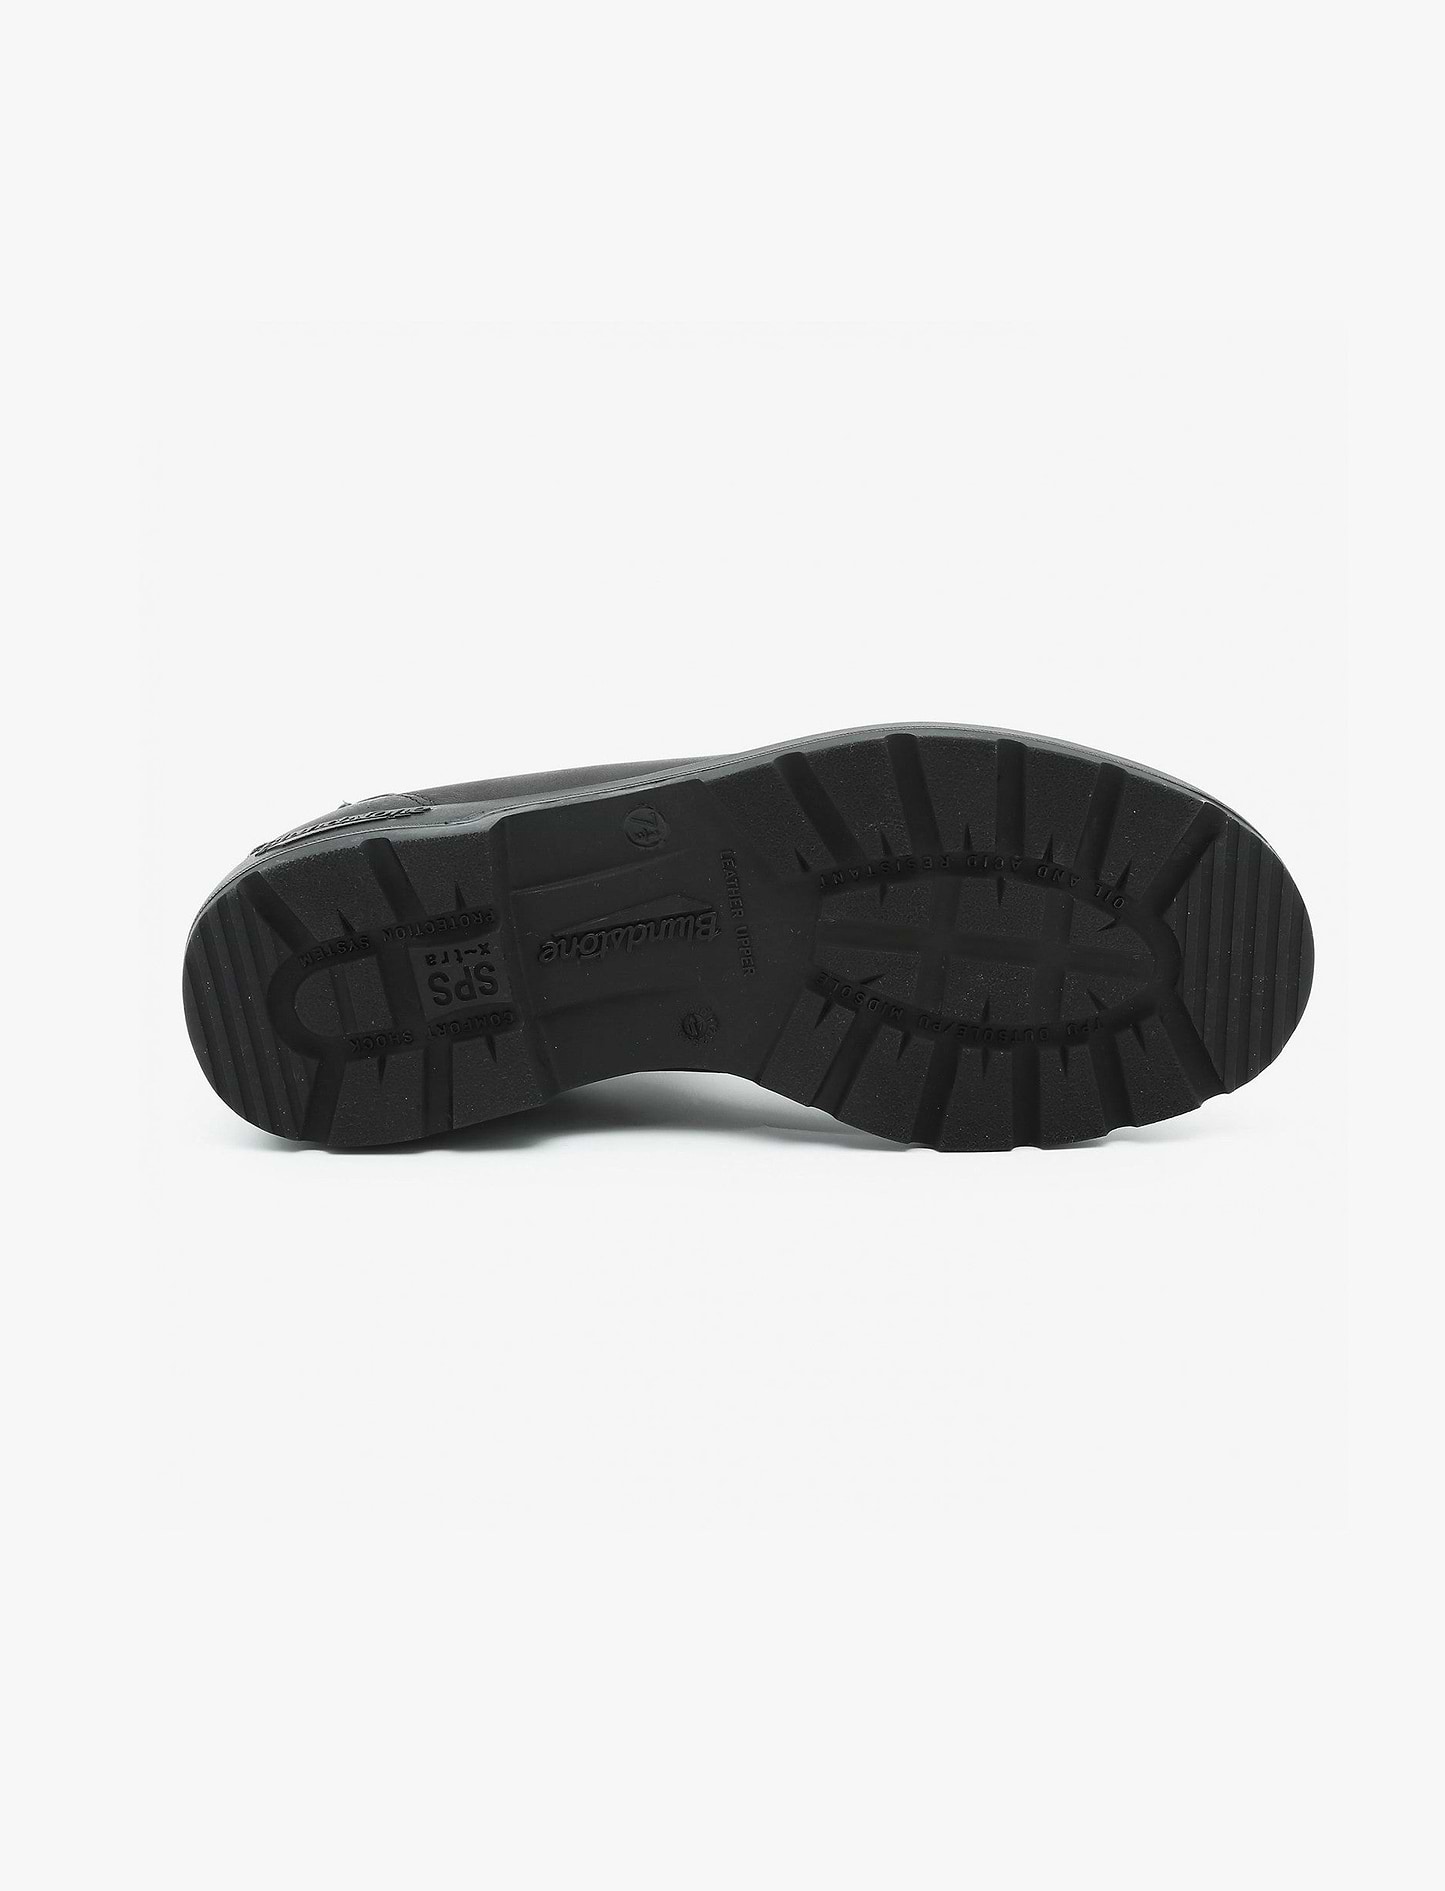 Blundstone W 558 - נעלי בלנסטון בצבע שחור